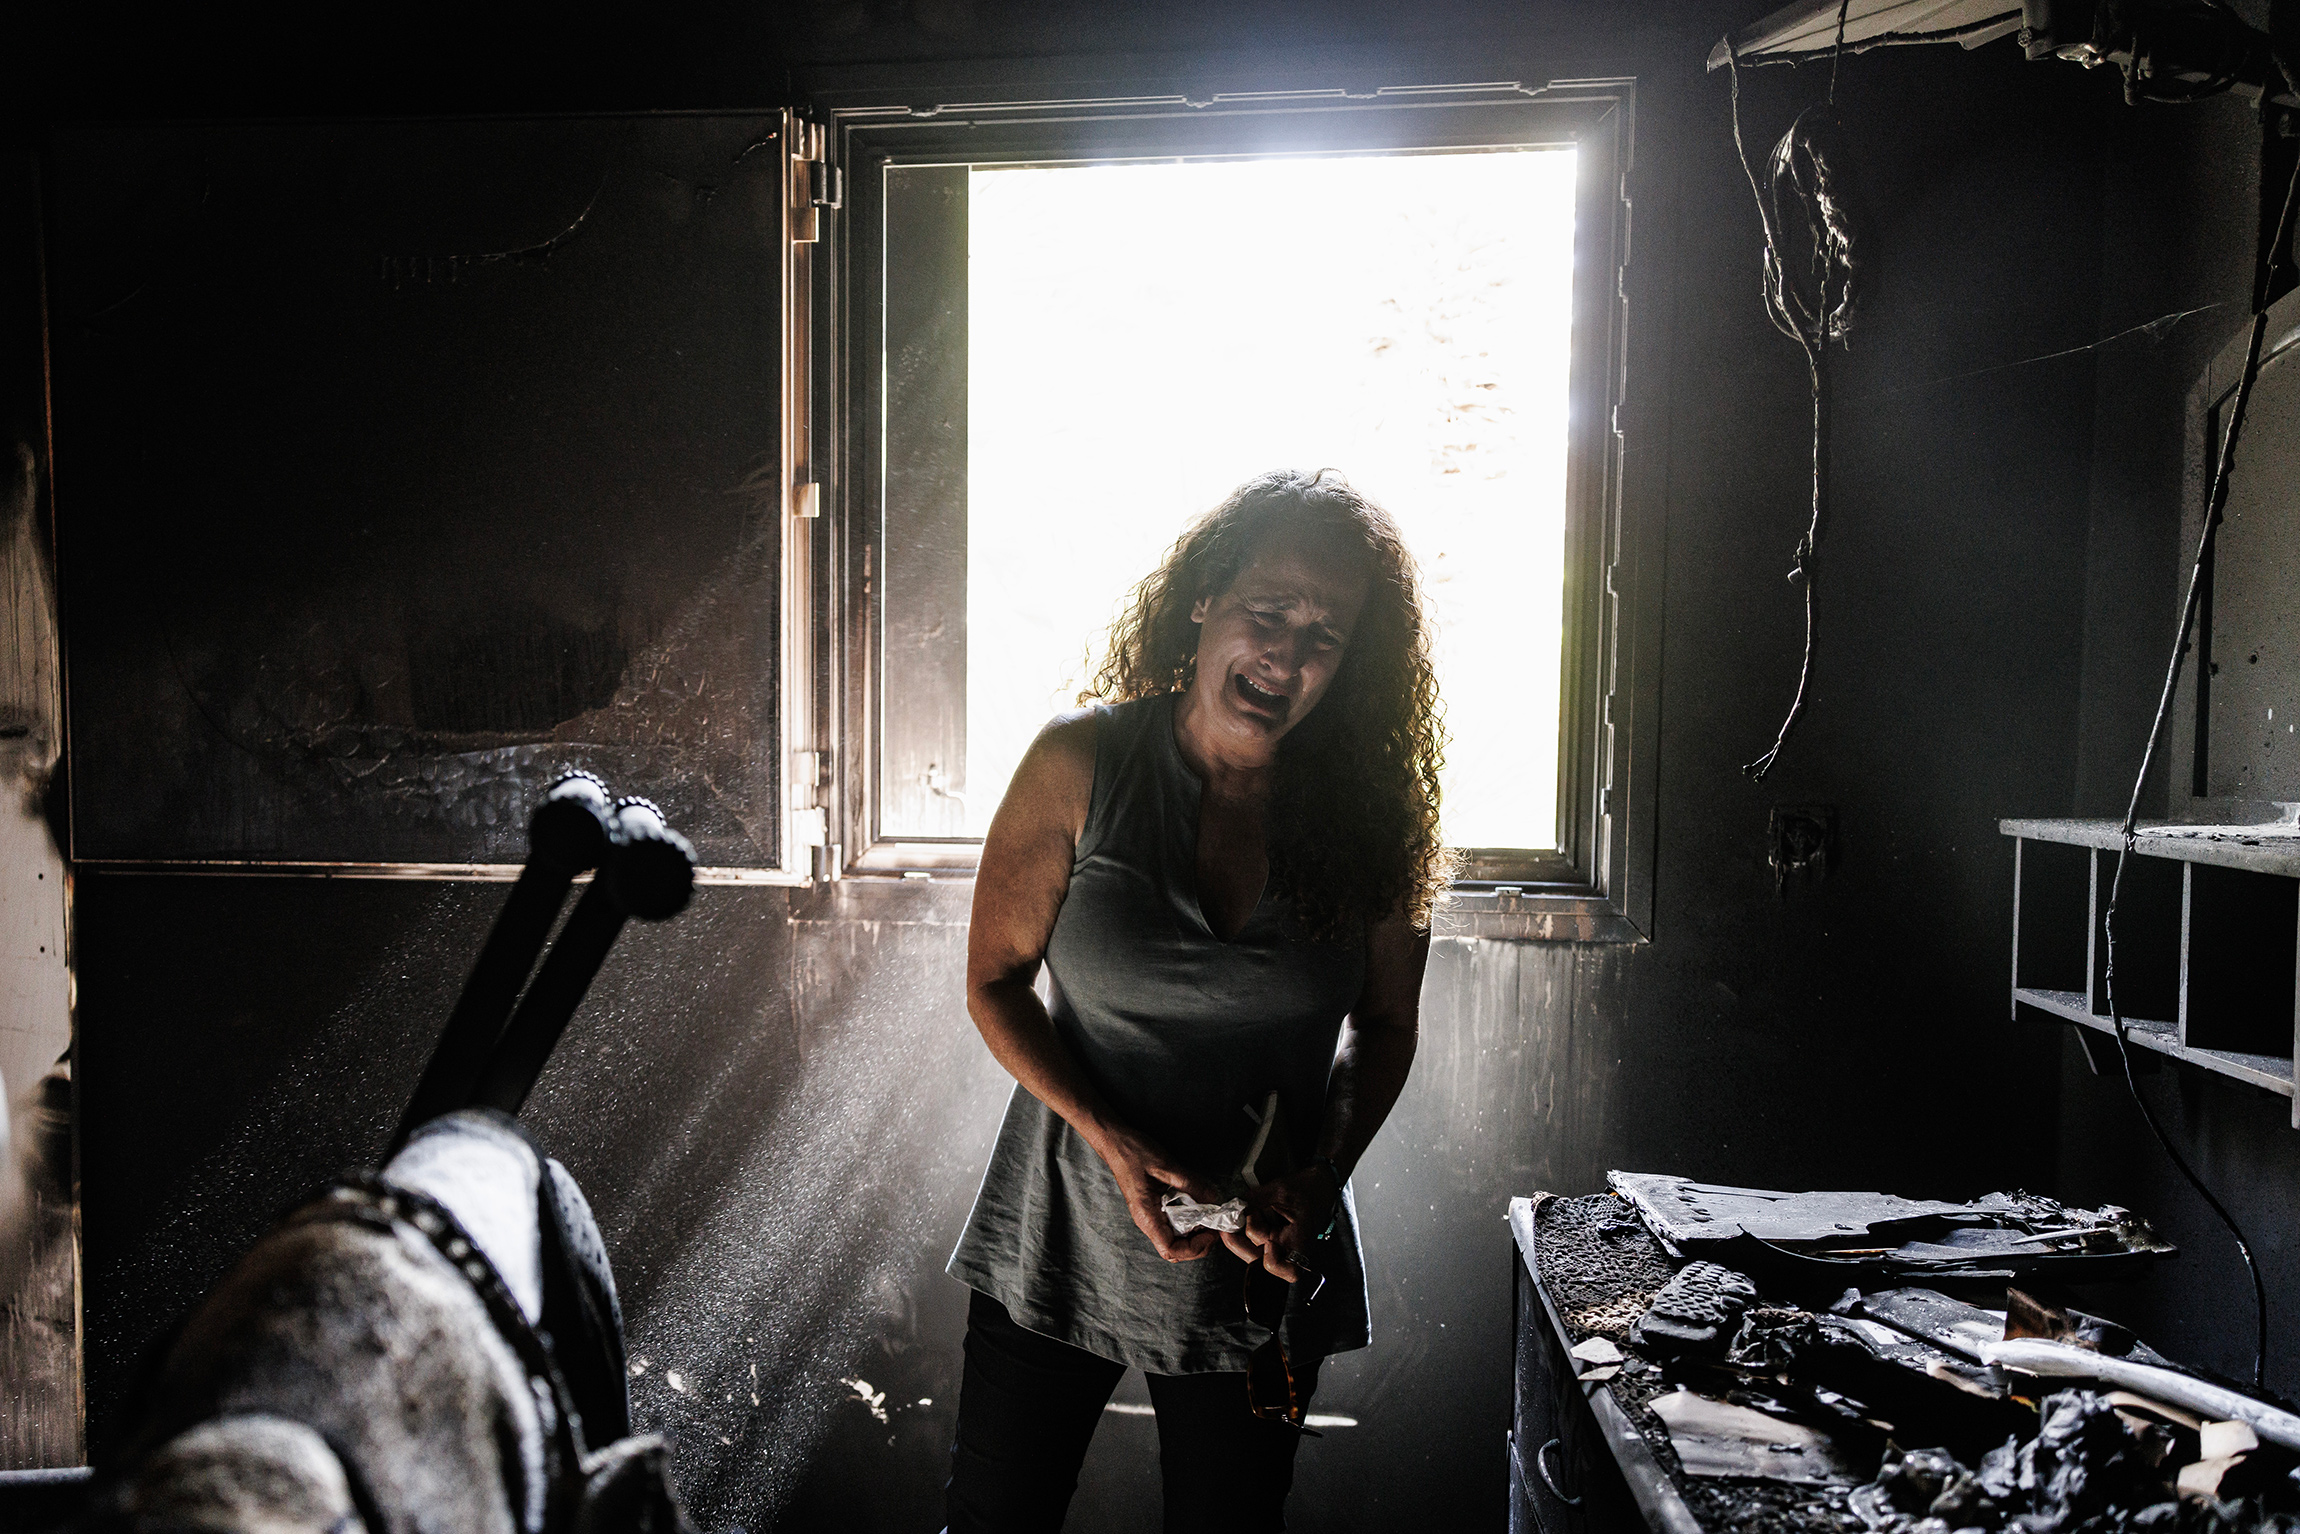 Жительница кибуца Нир-Оз на юге Израиля Хадас Кальдерон, чьи дети были взяты в заложники, а мать и племянница убиты во время террористической атаки&nbsp;ХАМАС на страну, осматривает сгоревший дом, 30 октября

7 октября во время нападения боевики ХАМАС захватили свыше 200 заложников, их переправили в сектор Газа. Более ,2 тыс. человек были убиты.&nbsp;Израиль перешел в состояние войны и начал в секторе Газа операцию &laquo;Железные мечи&raquo;, а в конце октября начал&nbsp;наземную операцию.&nbsp;